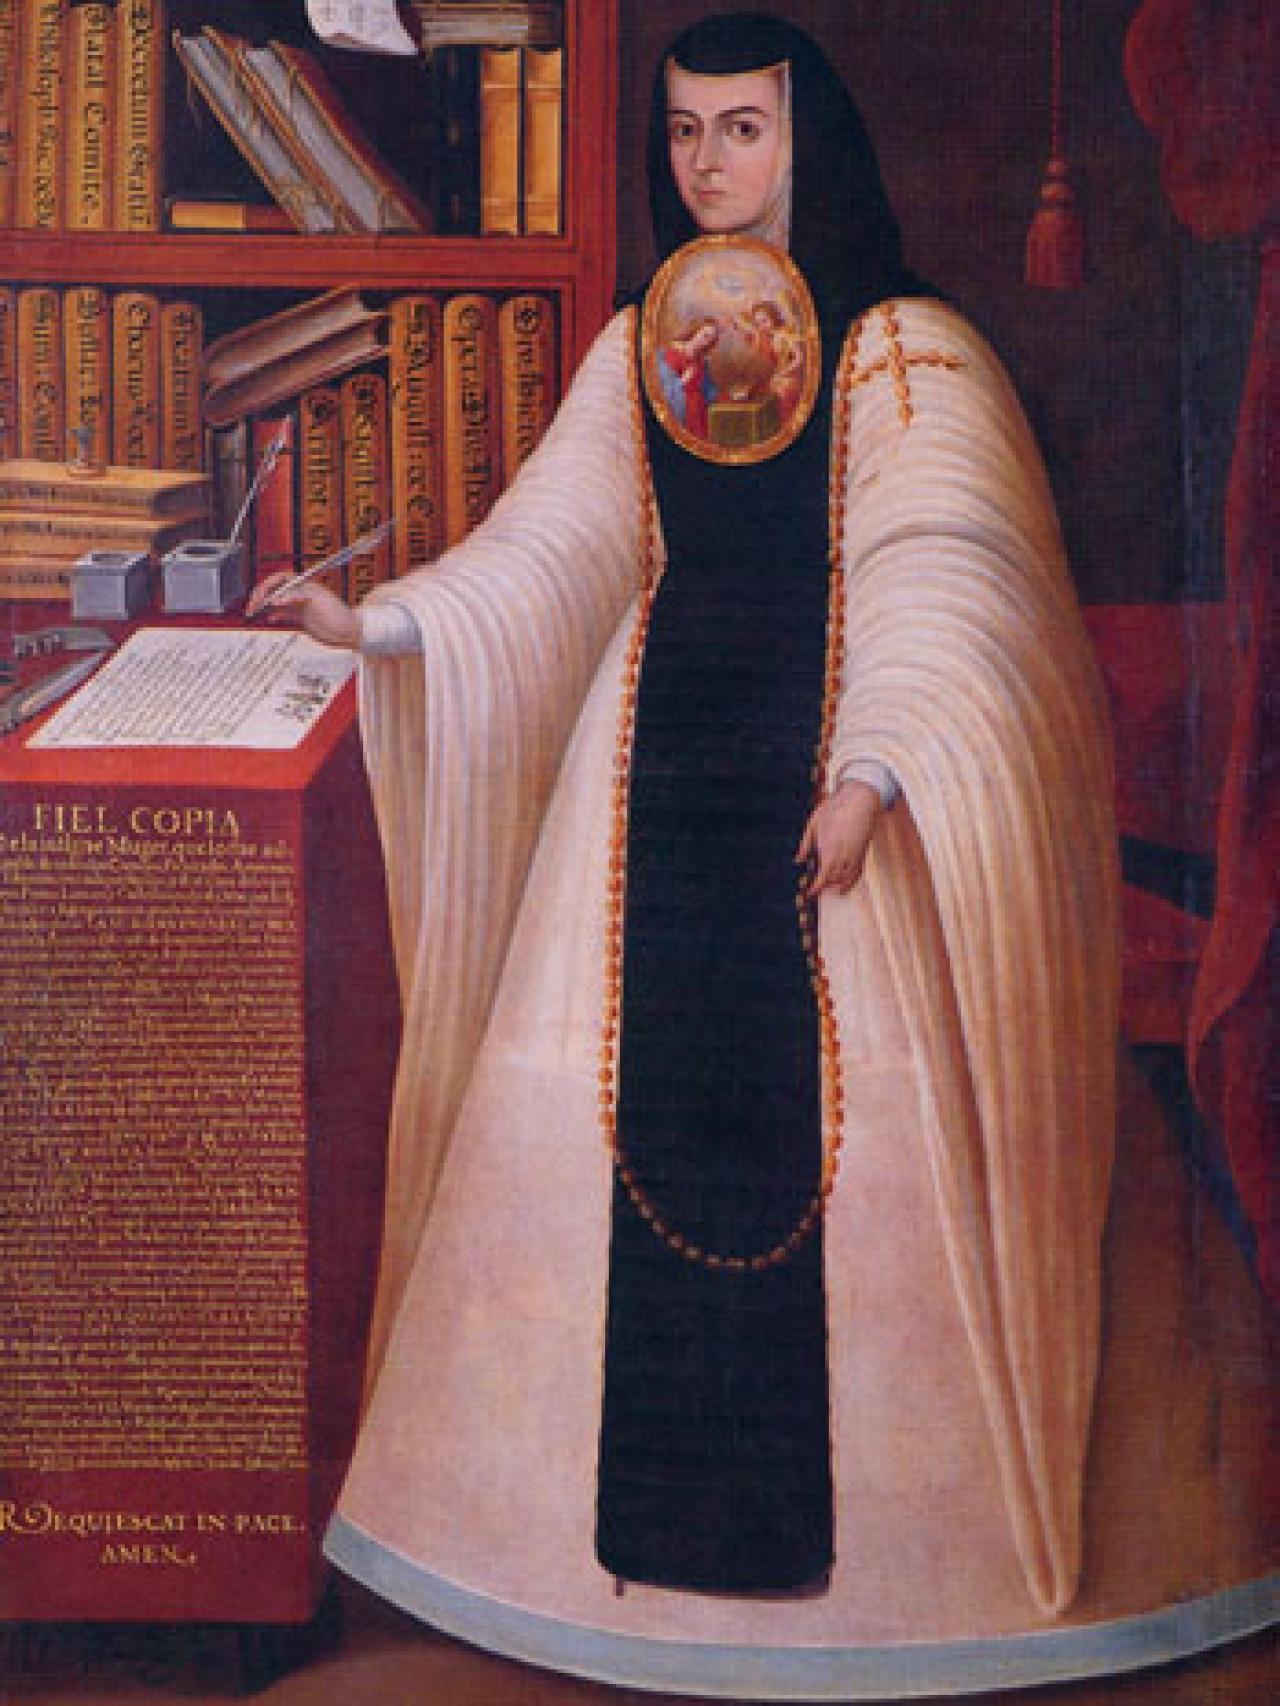 Retrato de Sor Juana Inés de la Cruz (1648-1695), ”copia fiel” siglo XVIII, de Juan de Miranda hacia 1713.